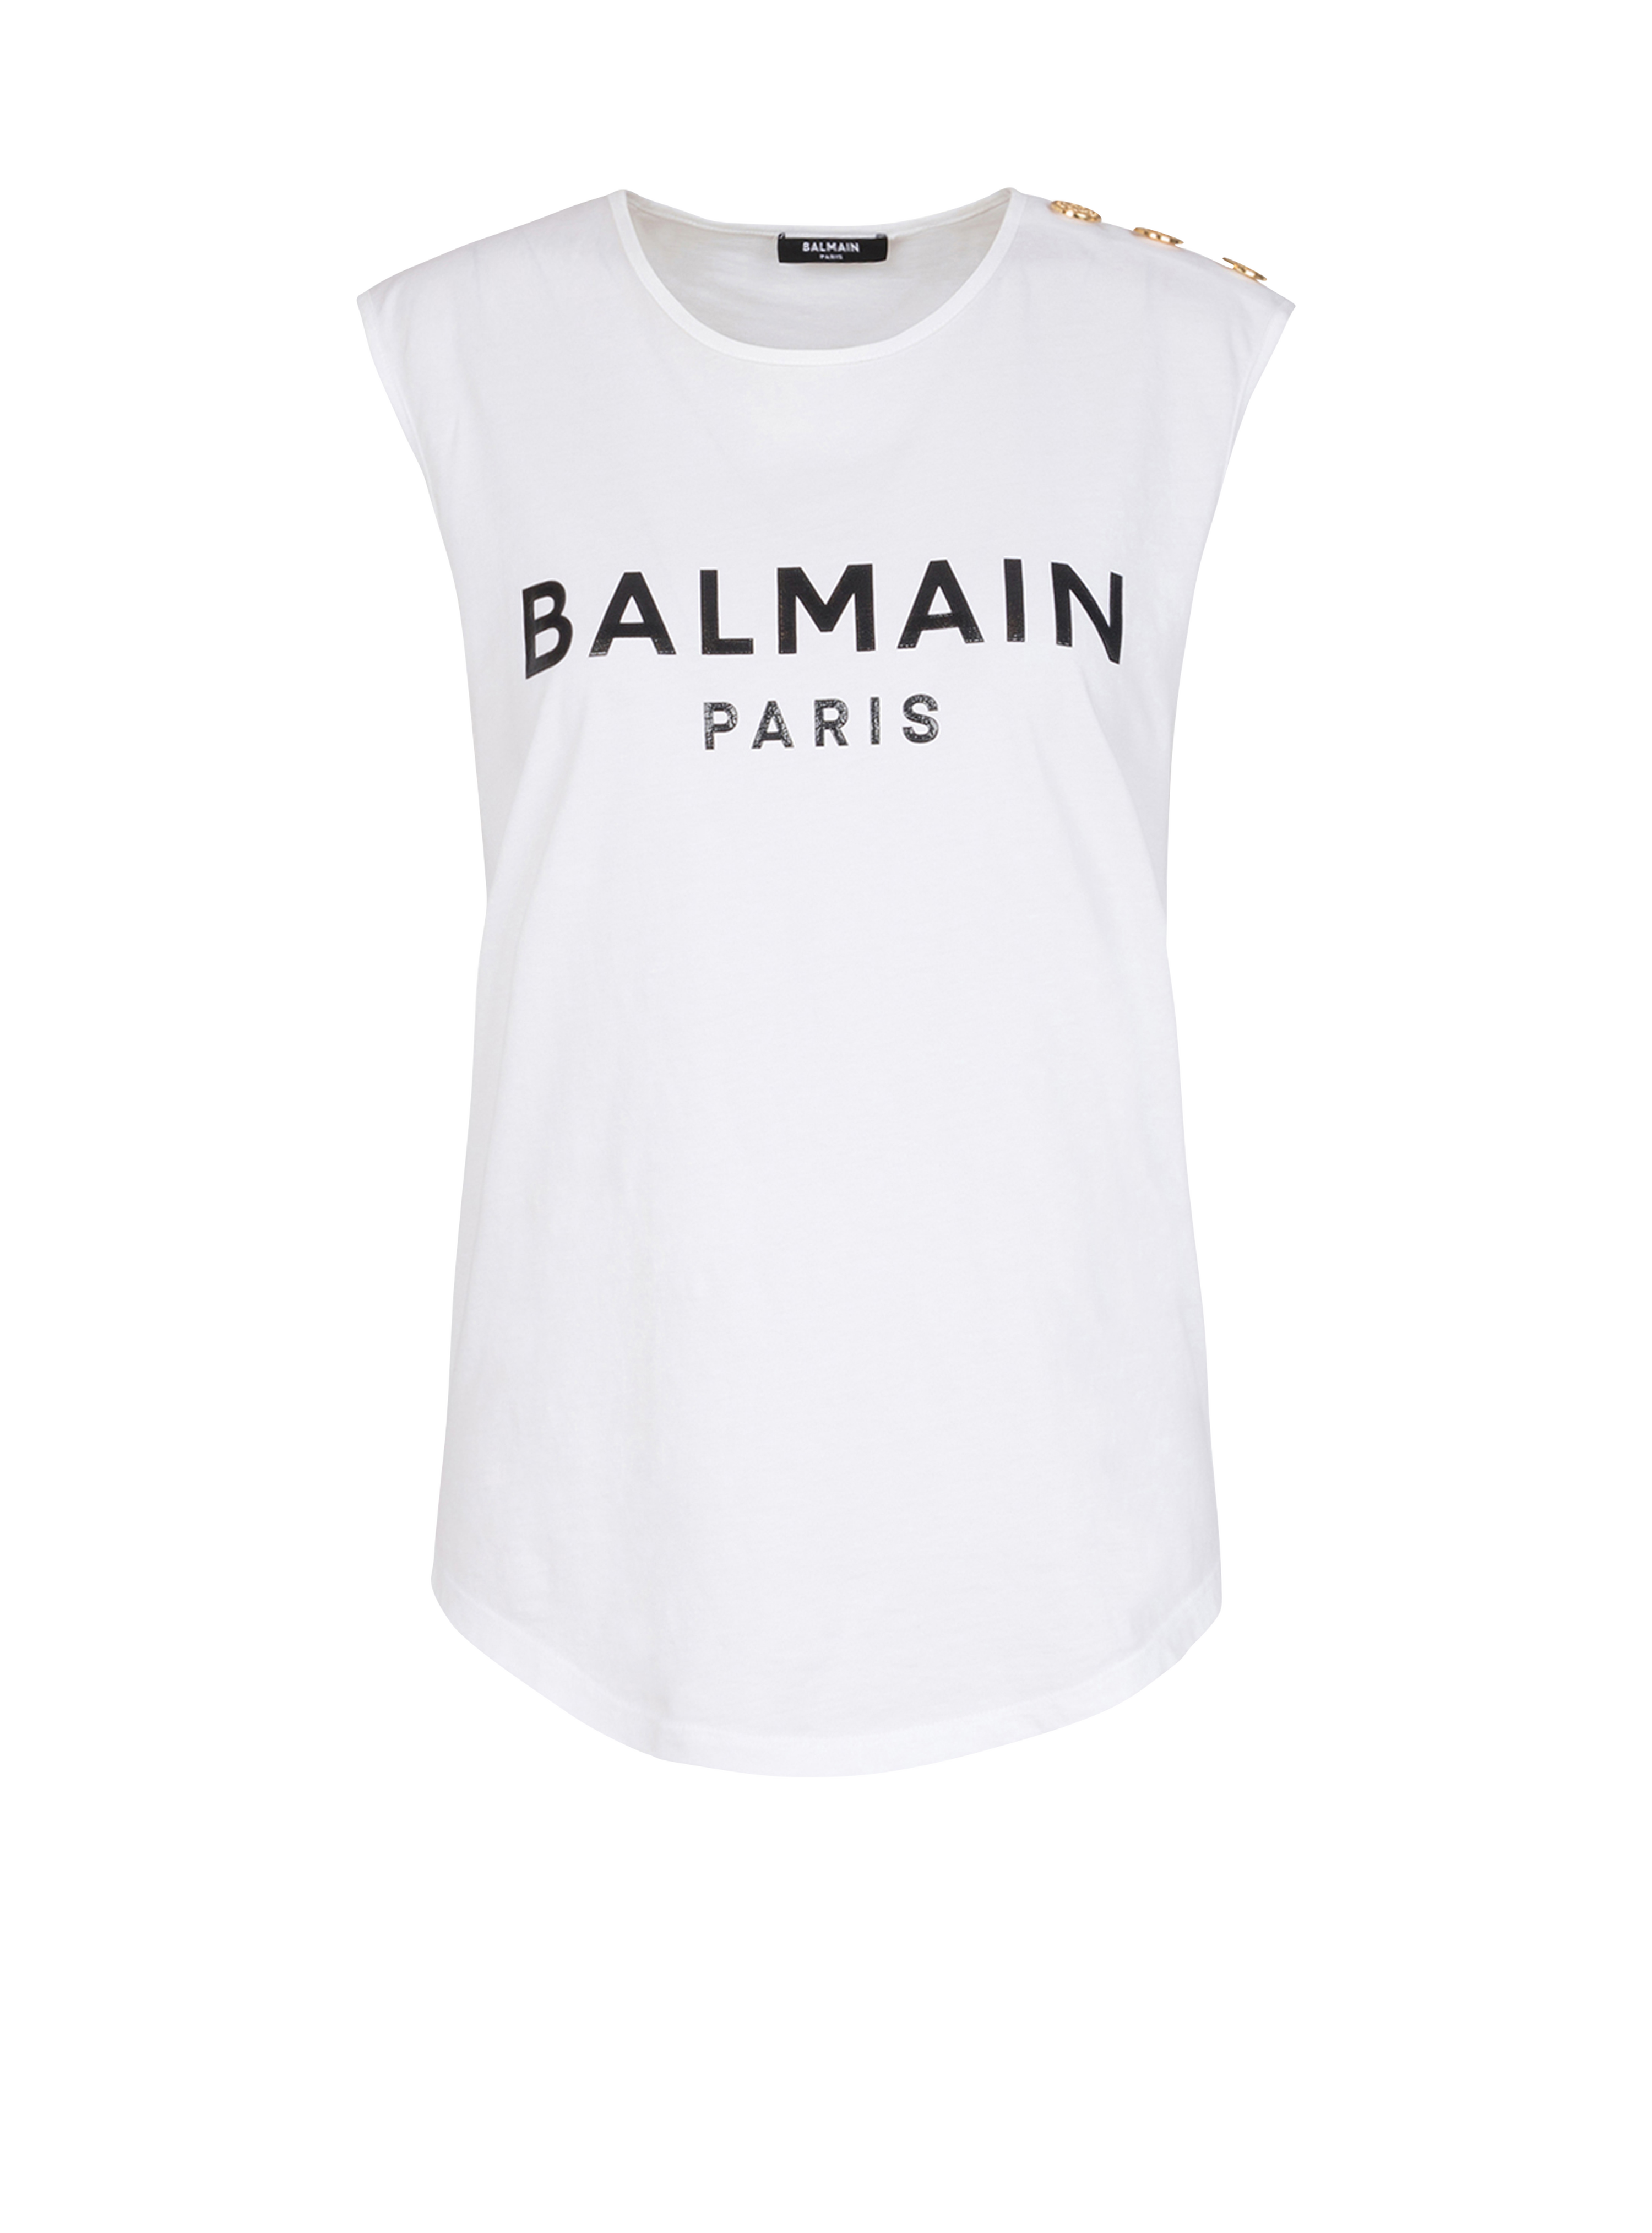 Eco-designed cotton T-shirt with Balmain logo print, white